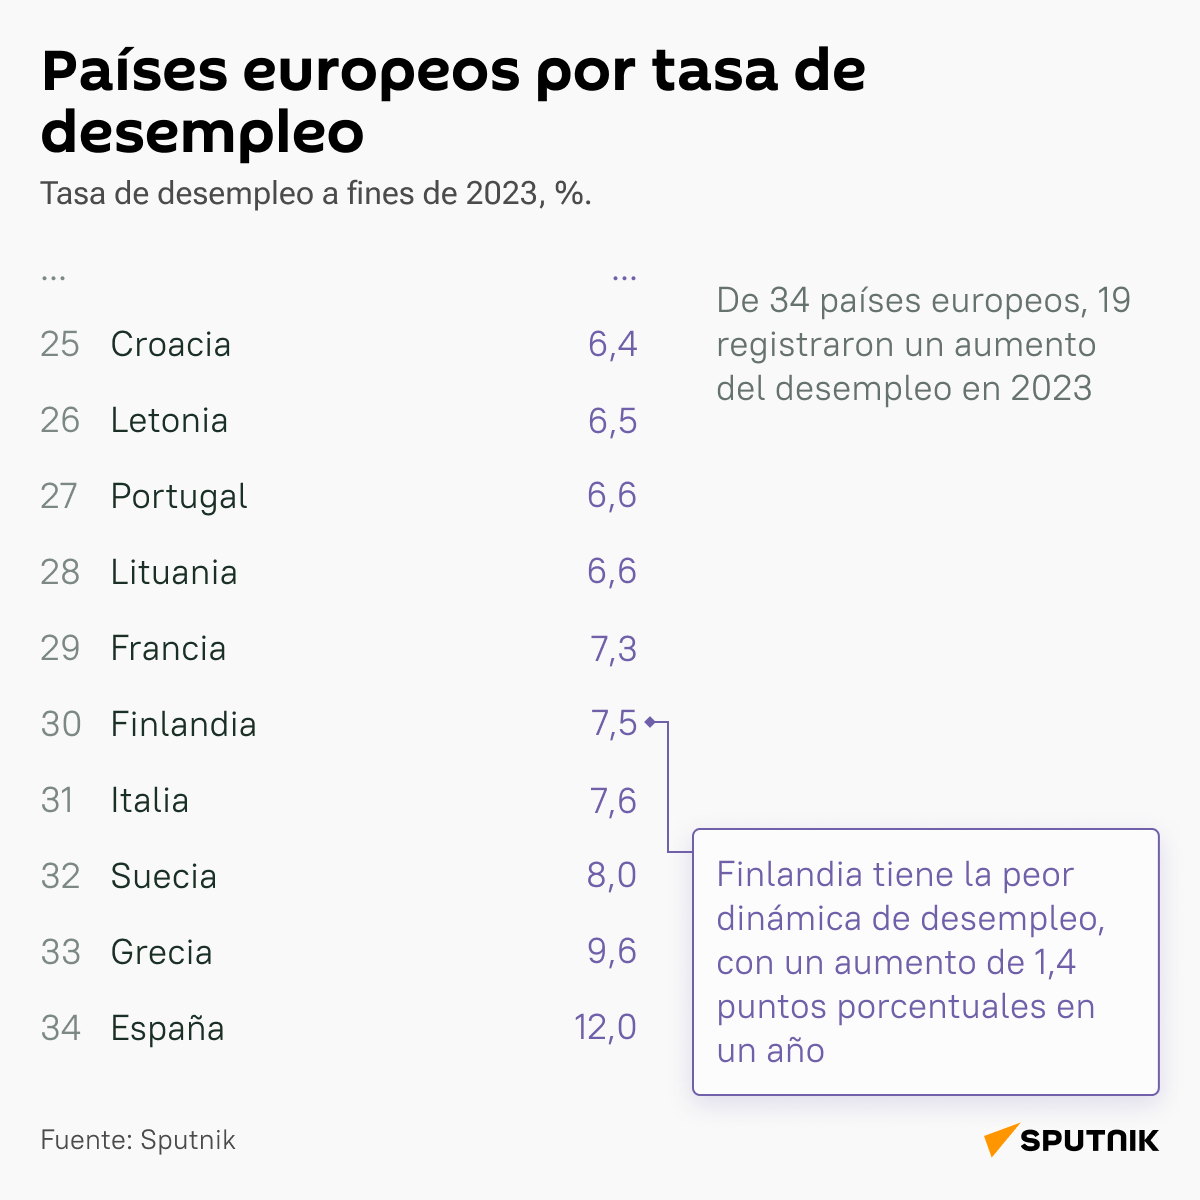 Países europeos por tasa de desempleo en 2023  - Sputnik Mundo